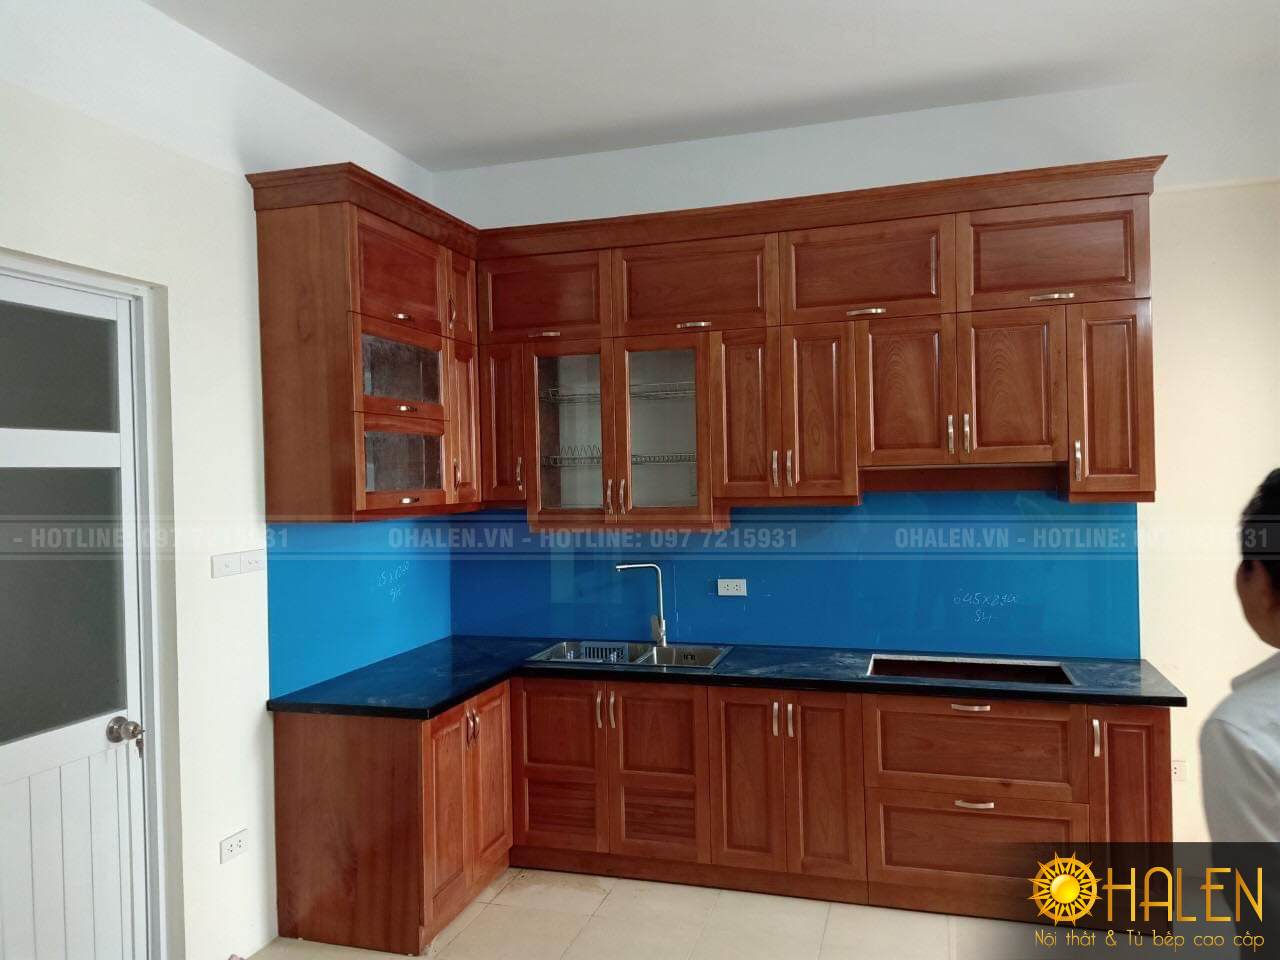 Tủ bếp gỗ xoan đào phun màu cánh gián ấm cúng cùng kính bếp màu xanh dương